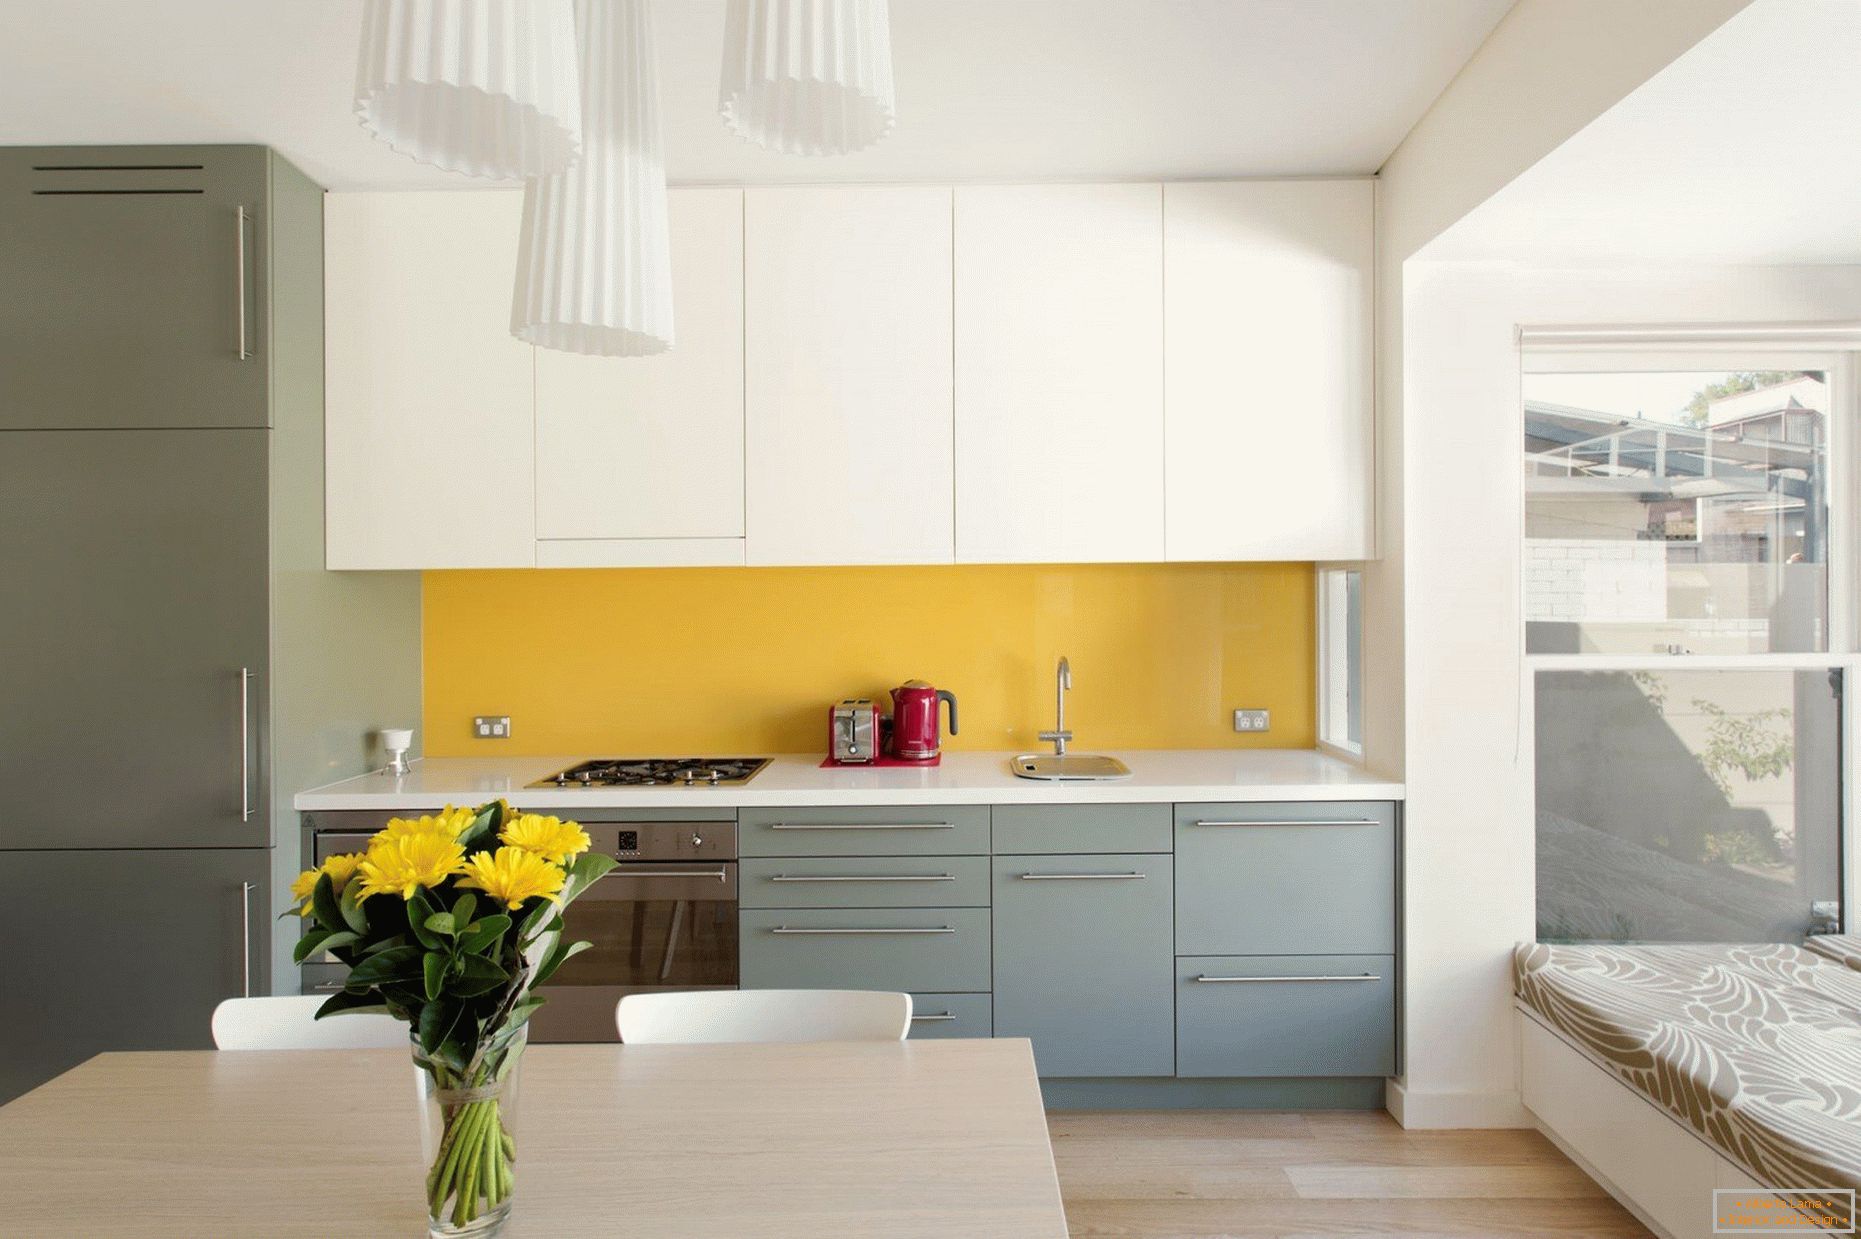 Žlutá zástěra v bílé a šedé kuchyni